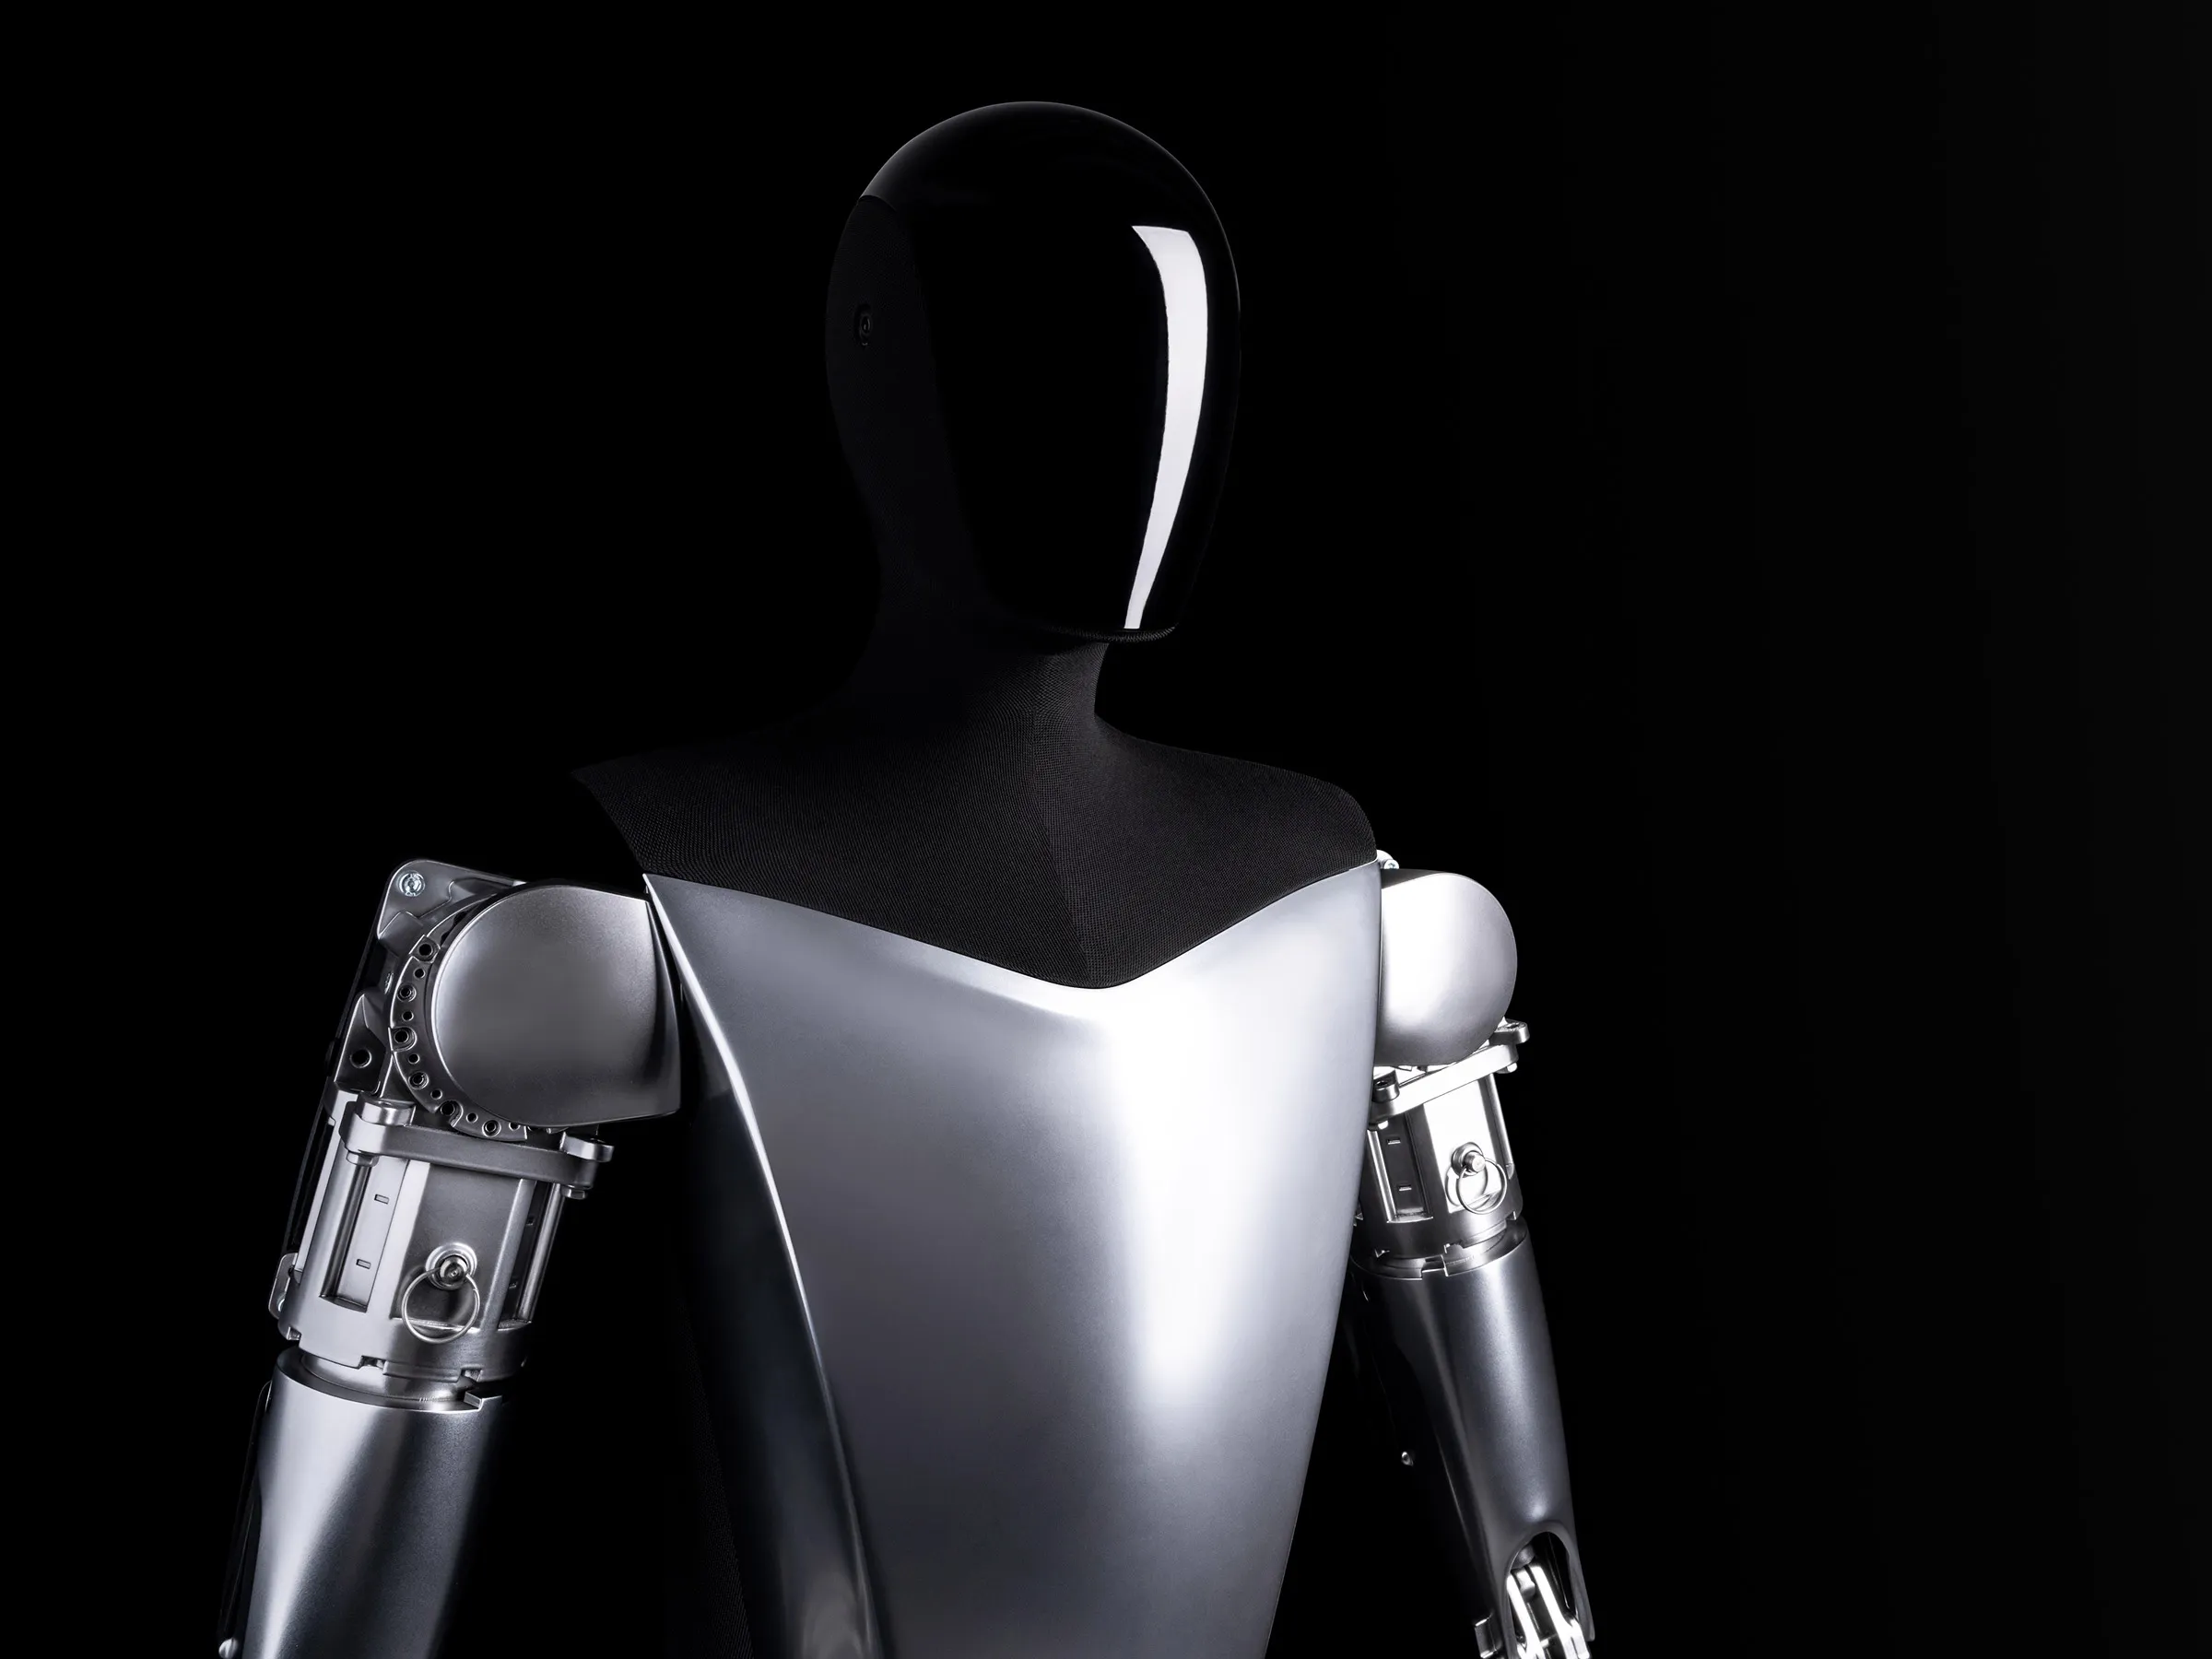 Le marché des robots humanoïdes comme Tesla Optimus atteindra 152 milliards de dollars d'ici 2035 - Goldman Sachs